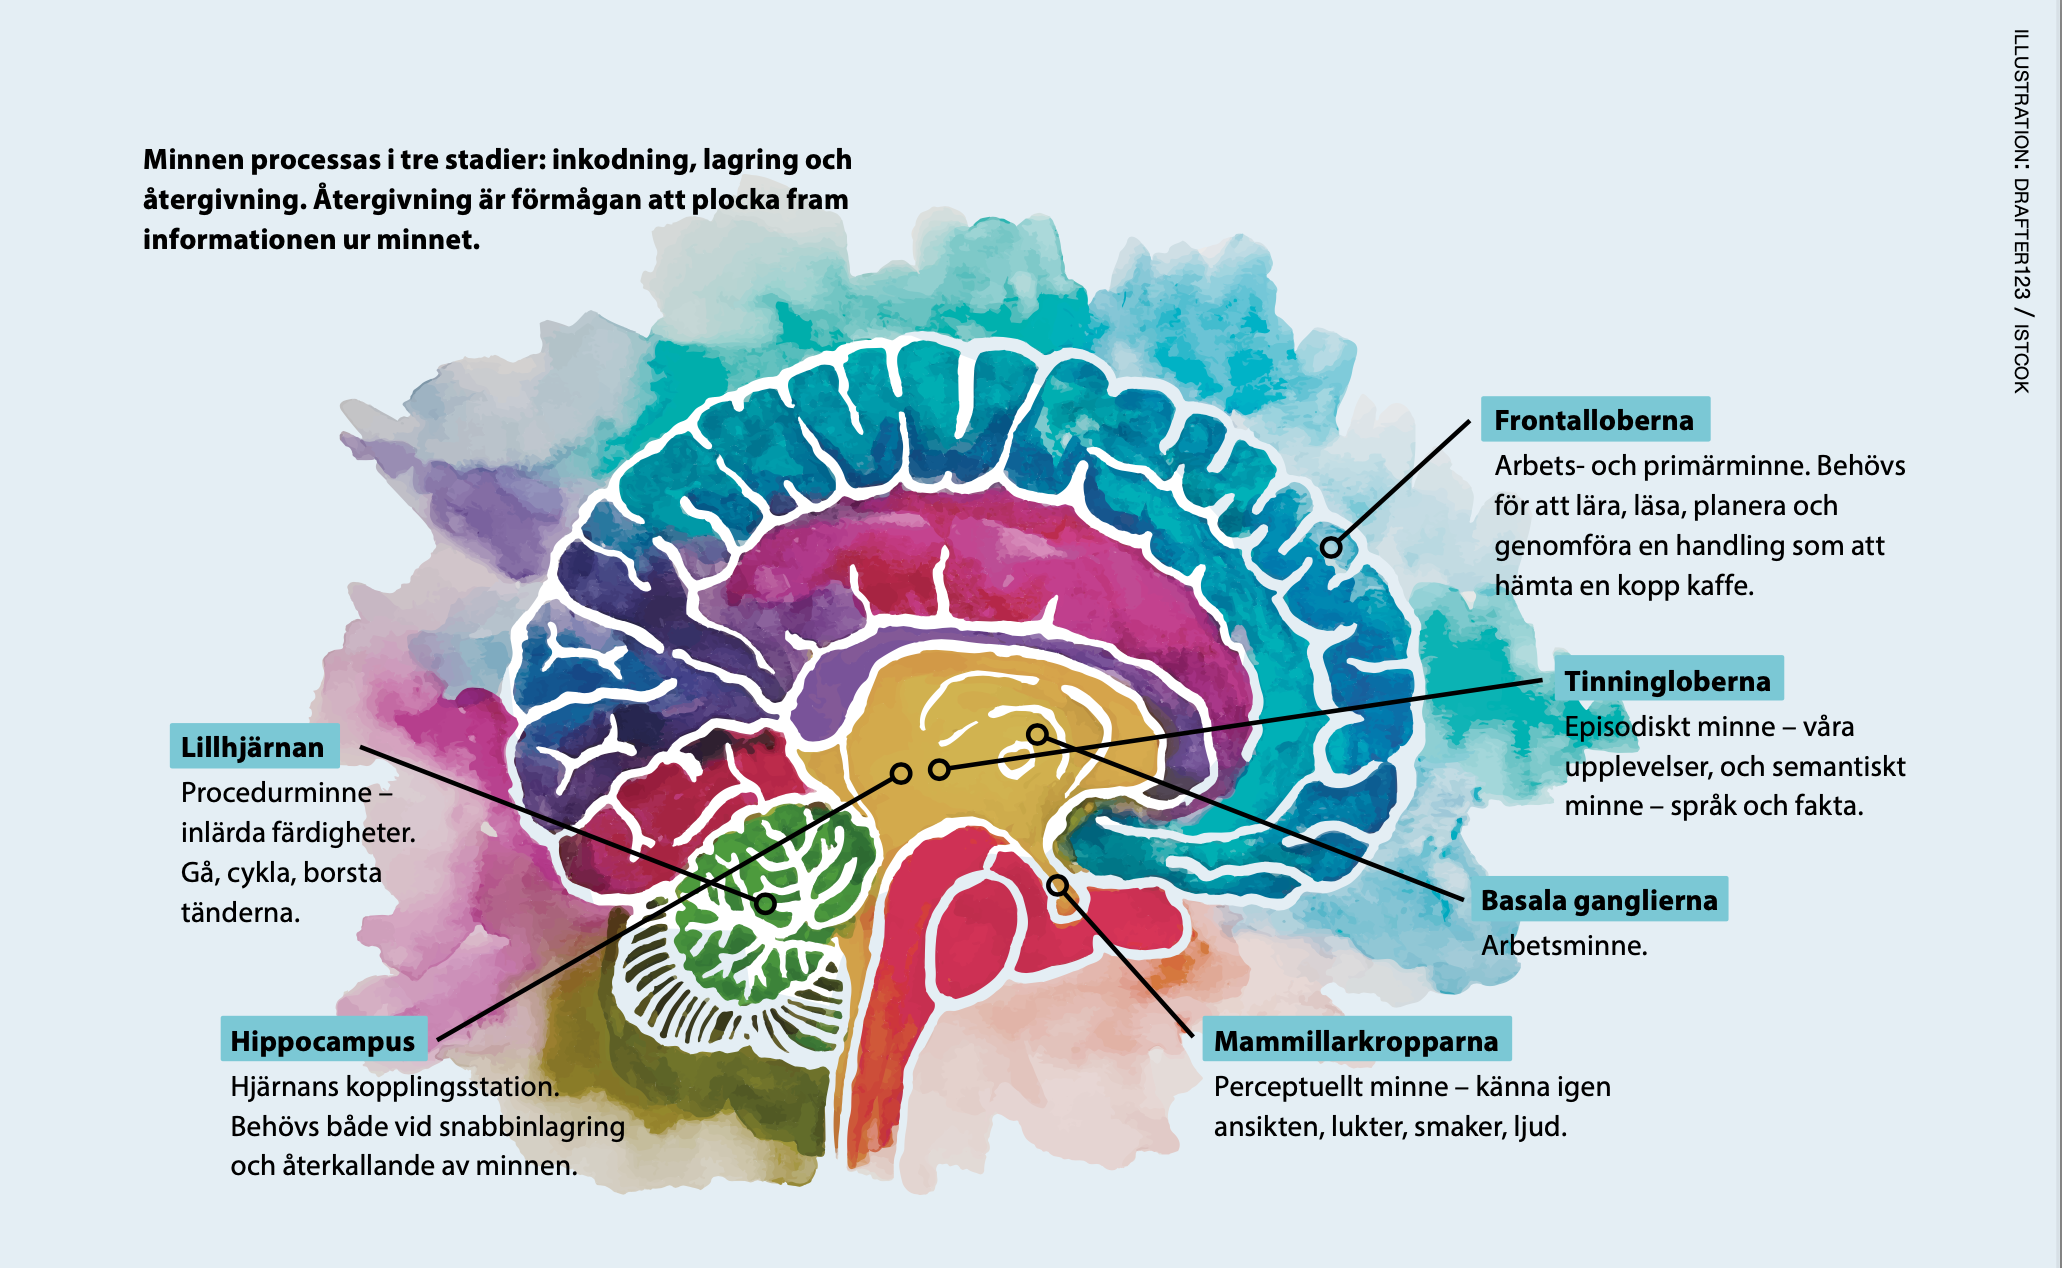 Färgglad illustration av en hjärna med pilar och förklaringar om var vissa minnesfunktioner har sin främsta hemvist i hjärnan.